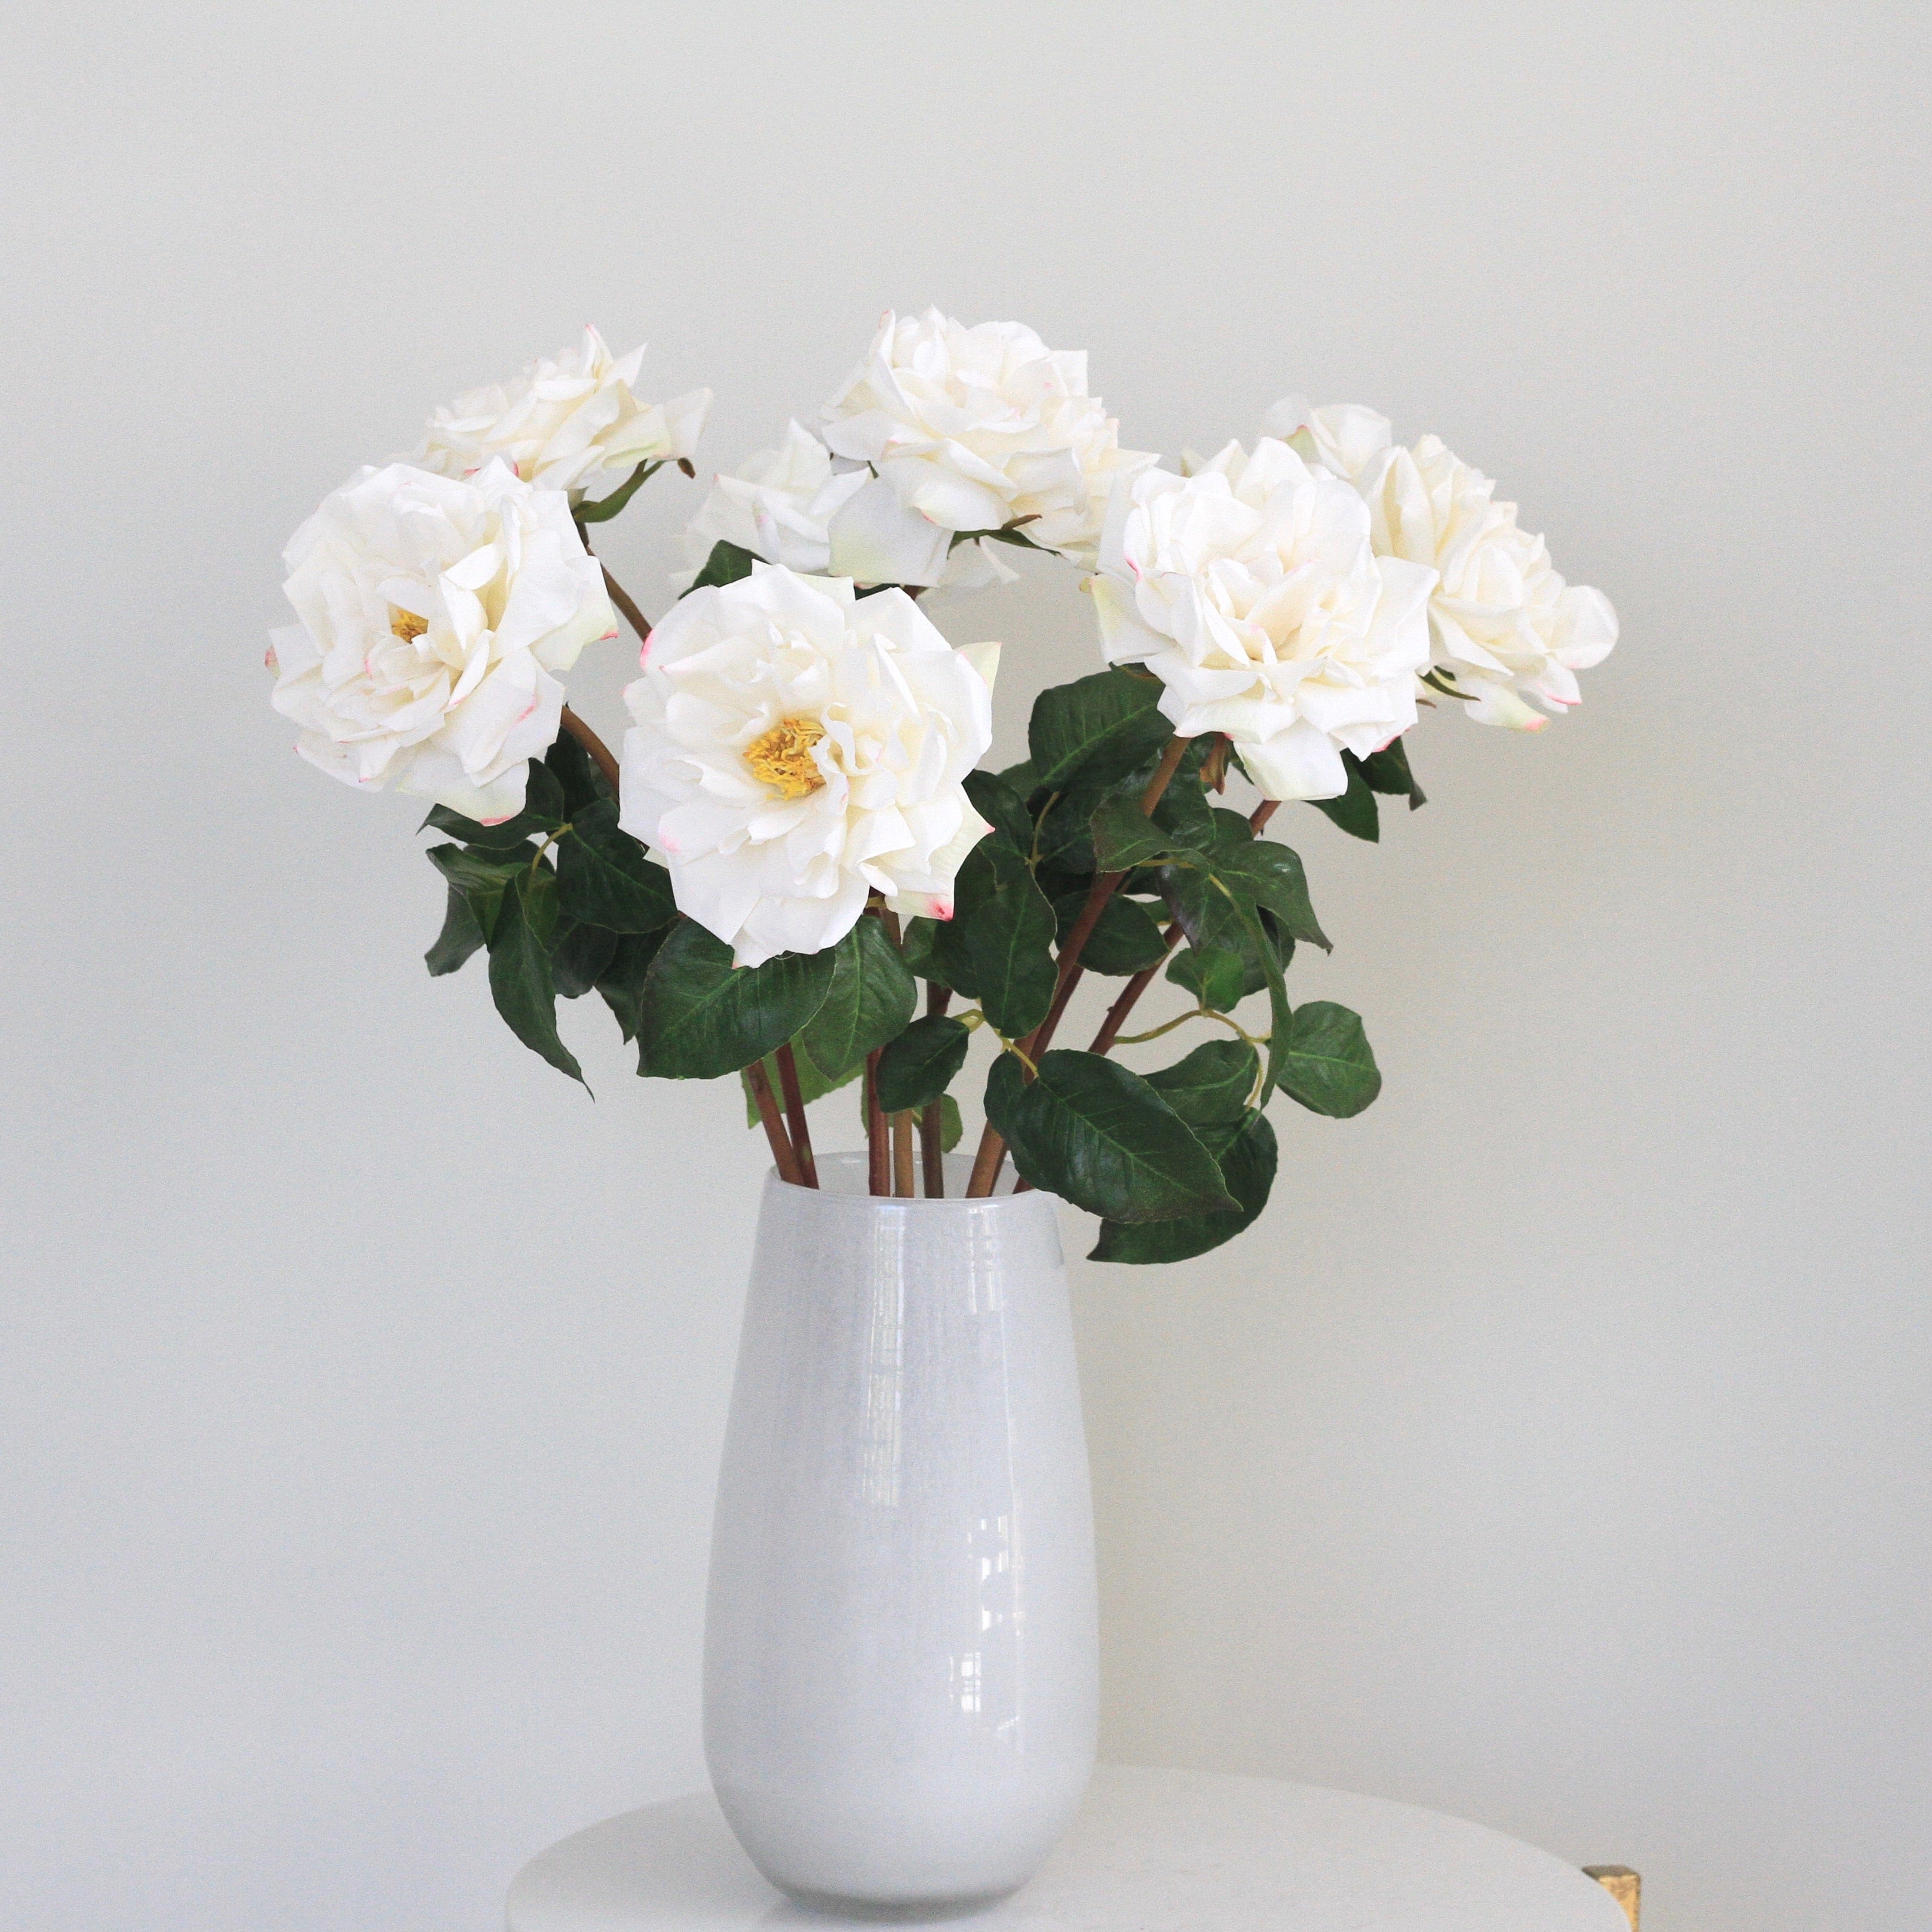 White Elegant Vase - Medium